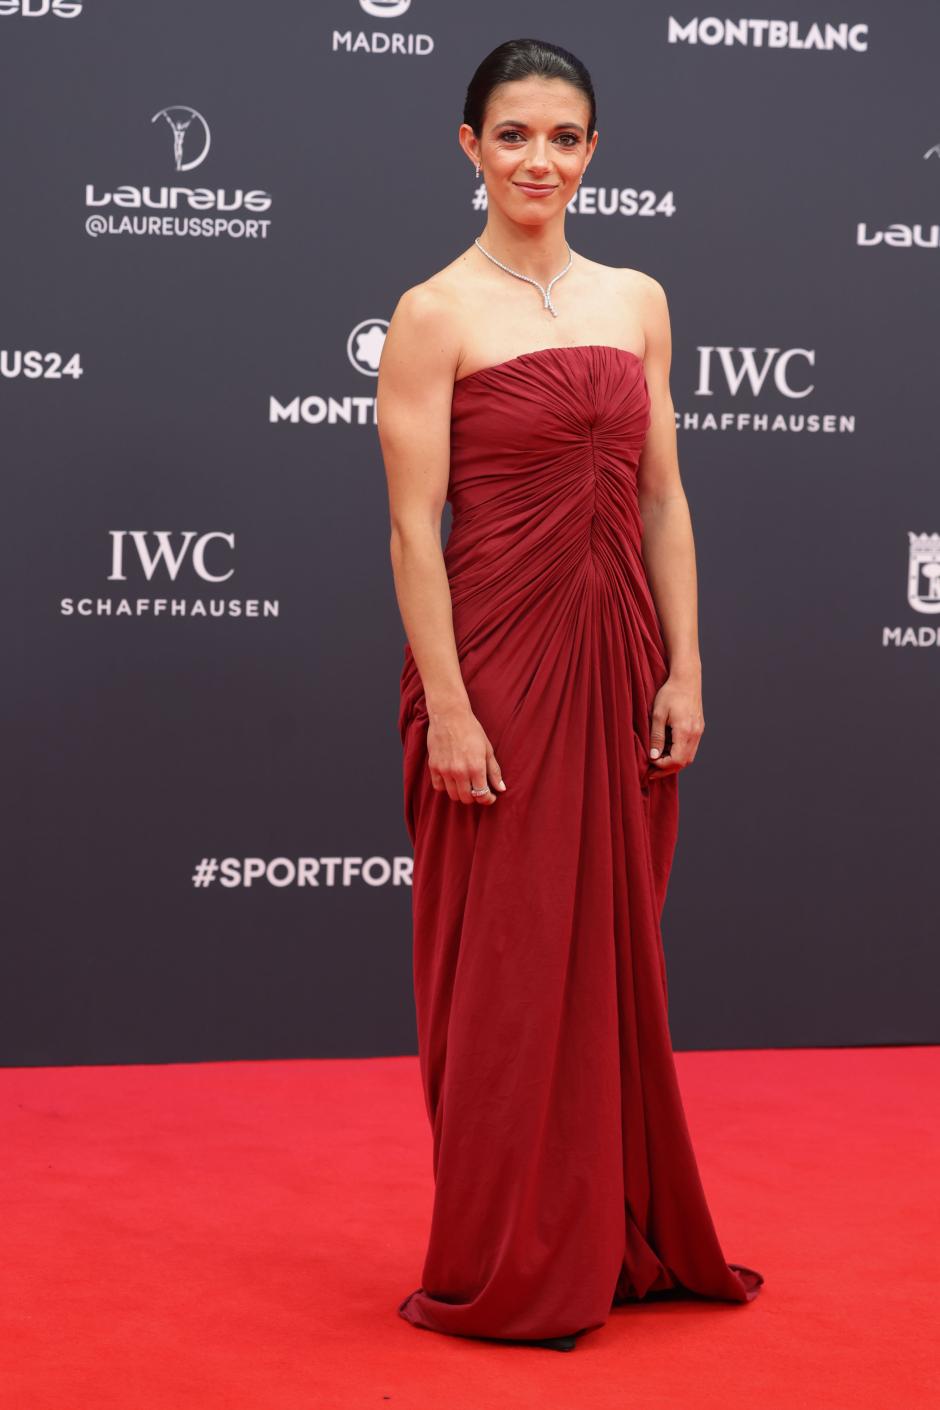 La futbolista Aitana Bonmatí a su llegada a la gala de entrega de los Premios Laureus este lunes en el Palacio Cibeles de Madrid